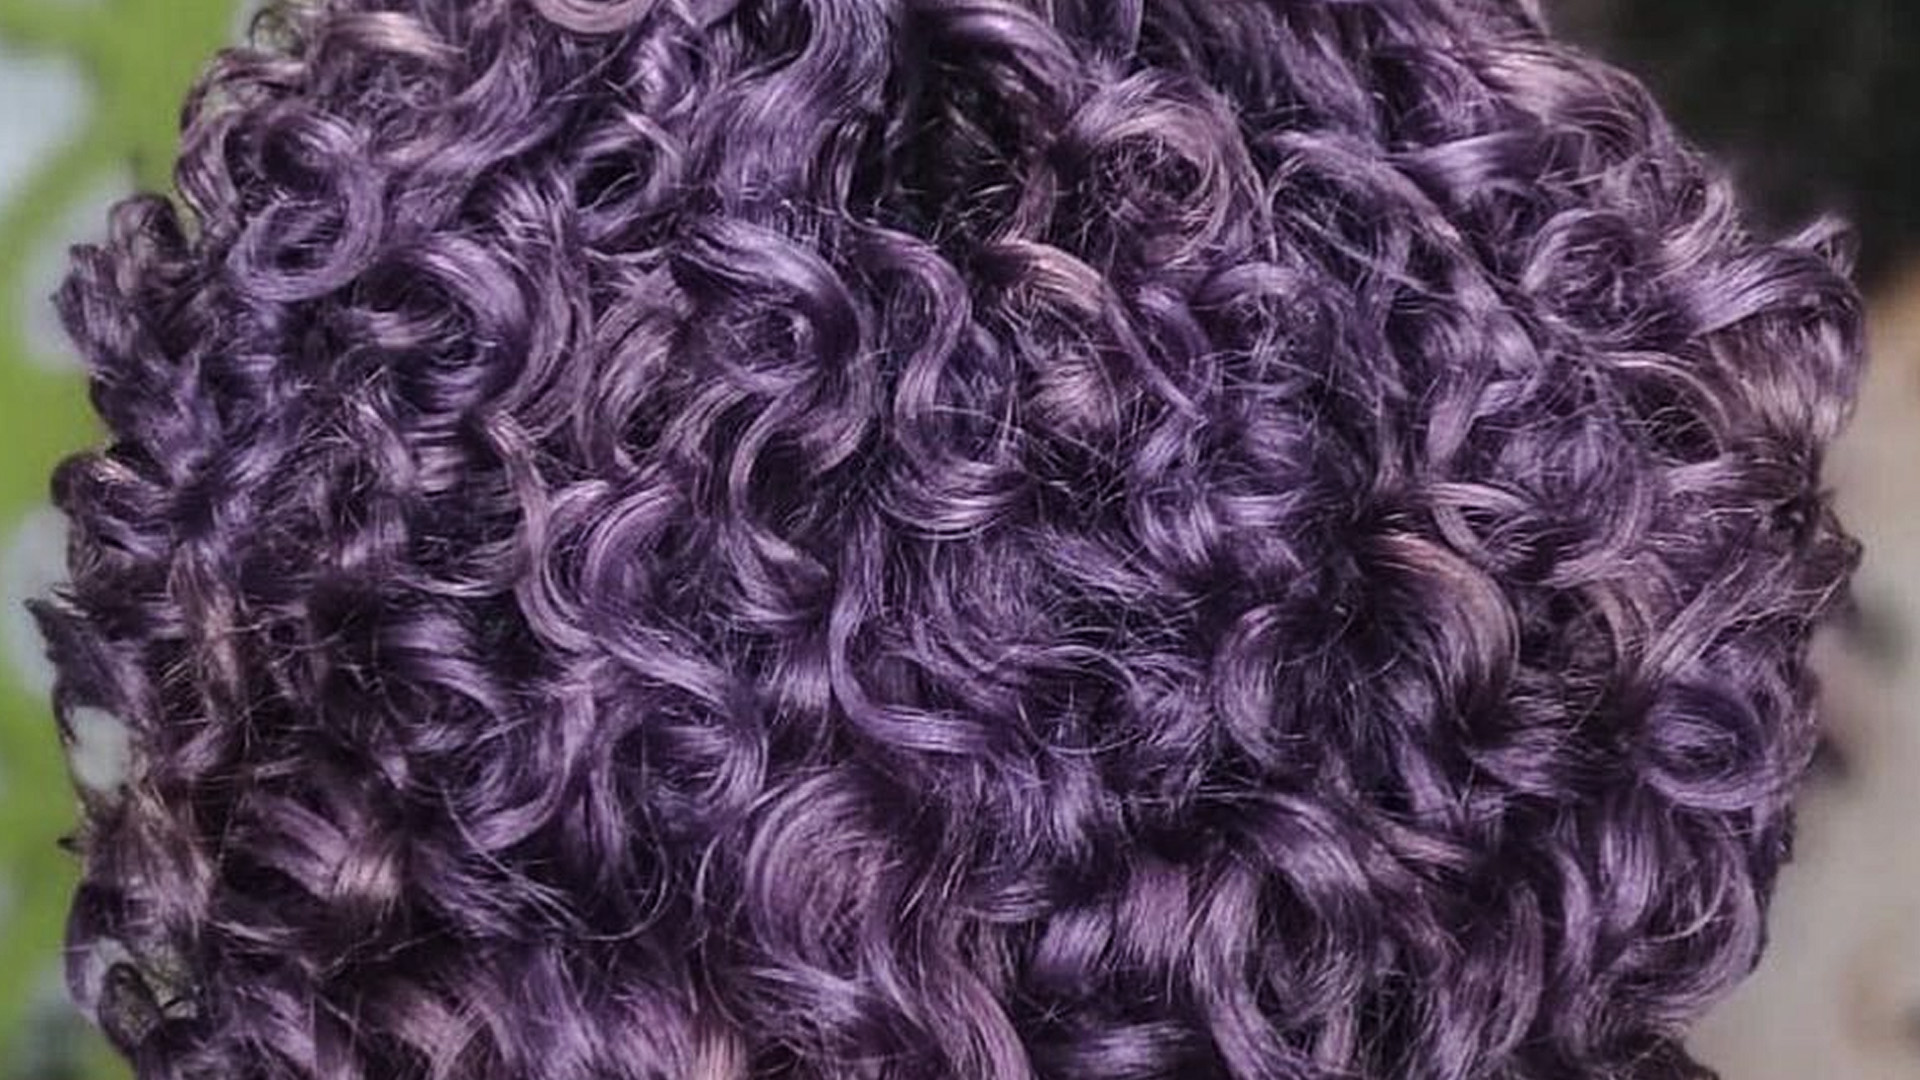 Cabelo cacheado colorido - Mitos e verdades sobre cabelos crespos